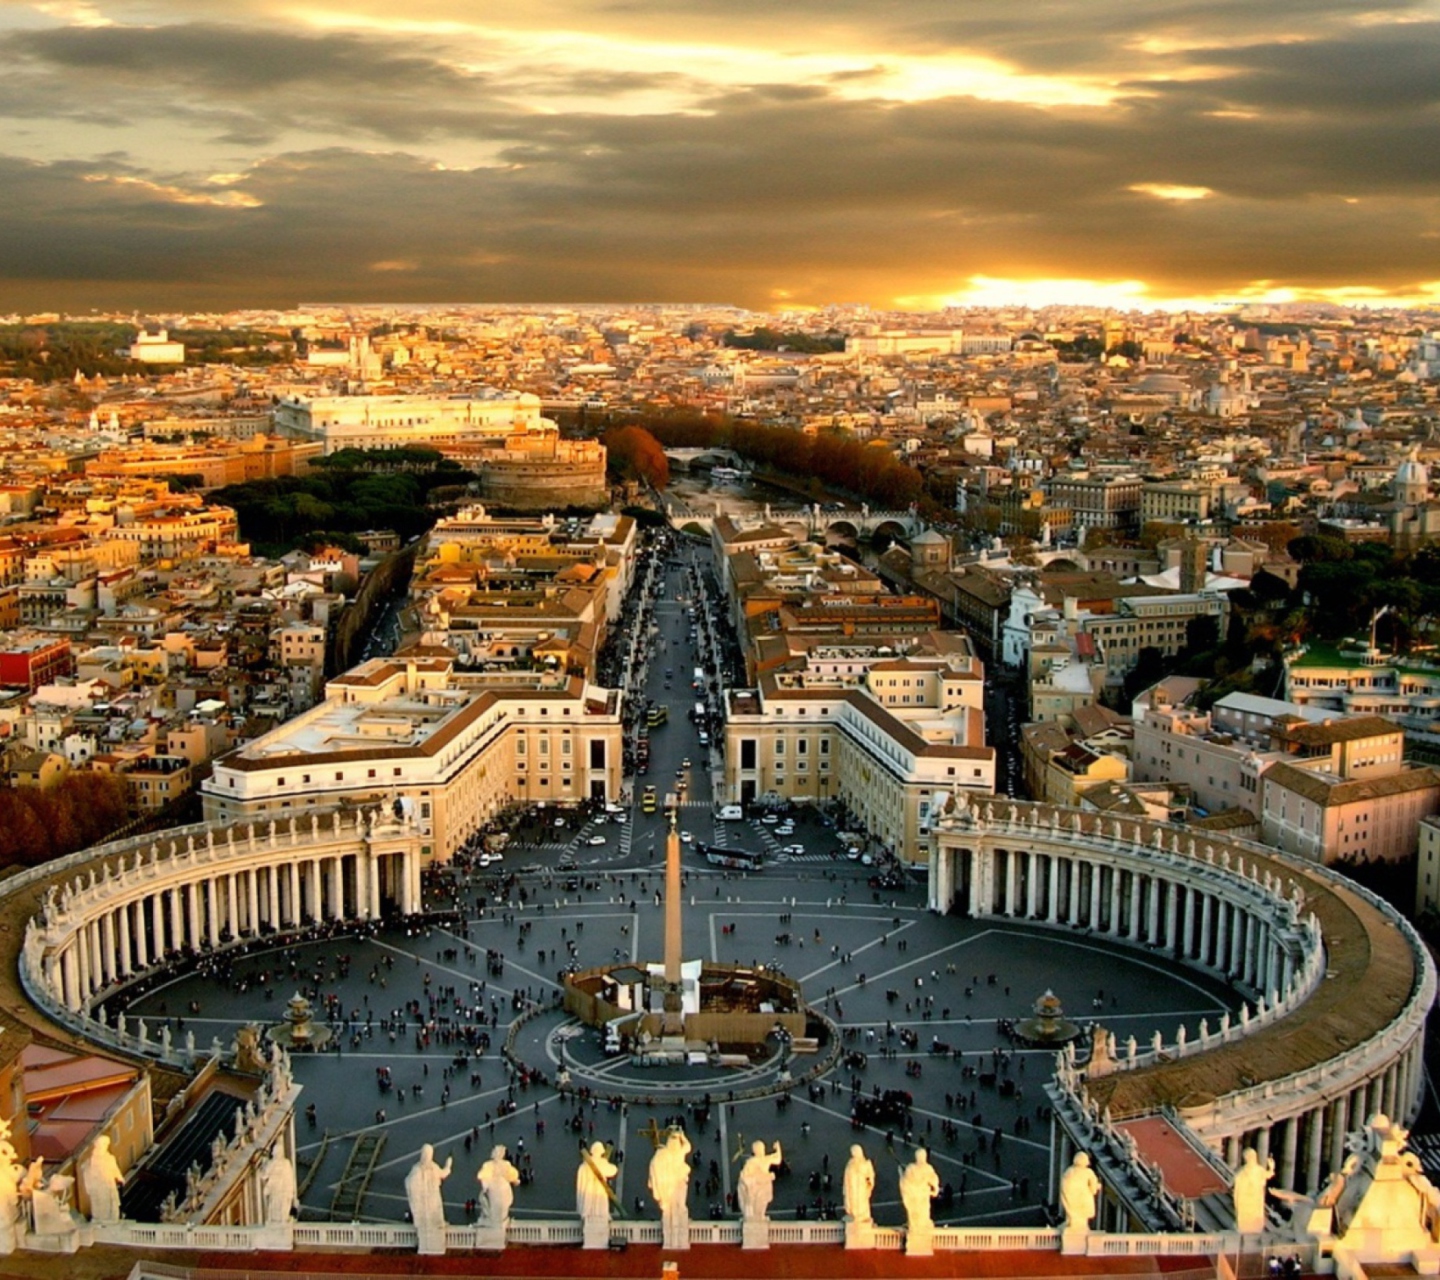 Das Piazza San Pietro Square - Vatican City Rome Wallpaper 1440x1280